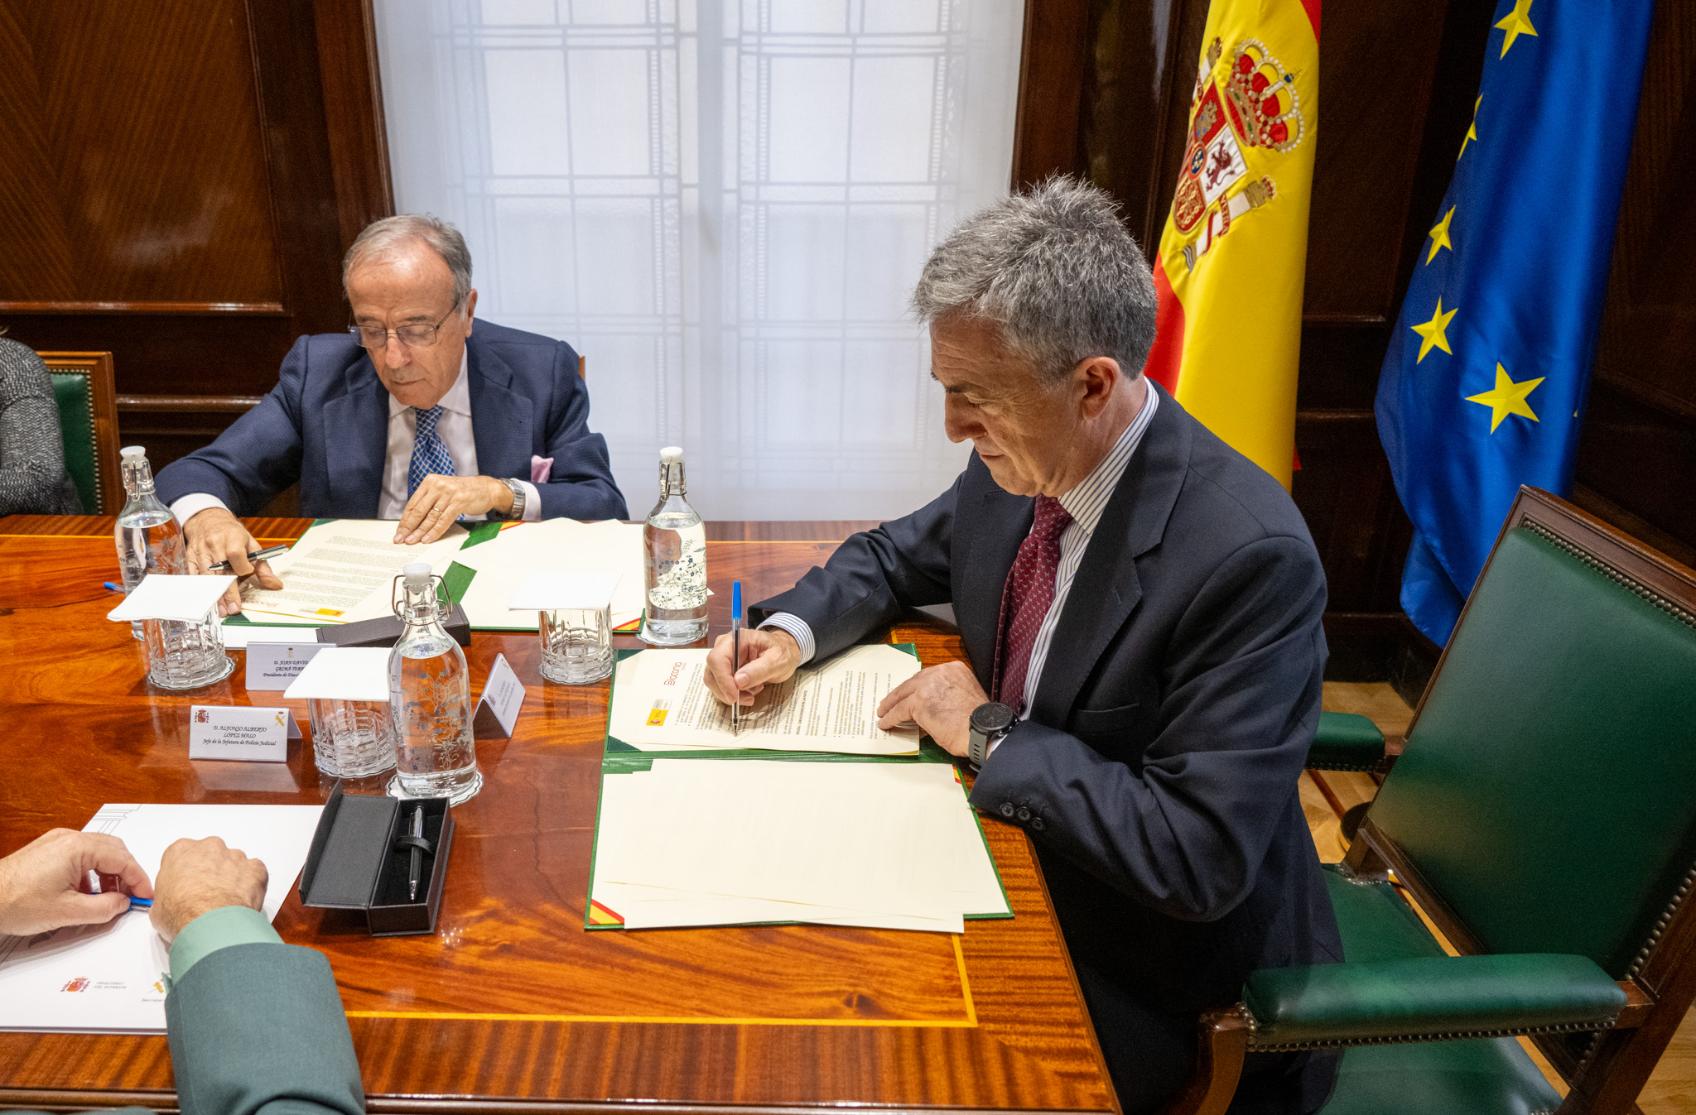 La Guardia Civil y Diaconía firman un protocolo para mejorar la protección y el acompañamiento de las víctimas de trata